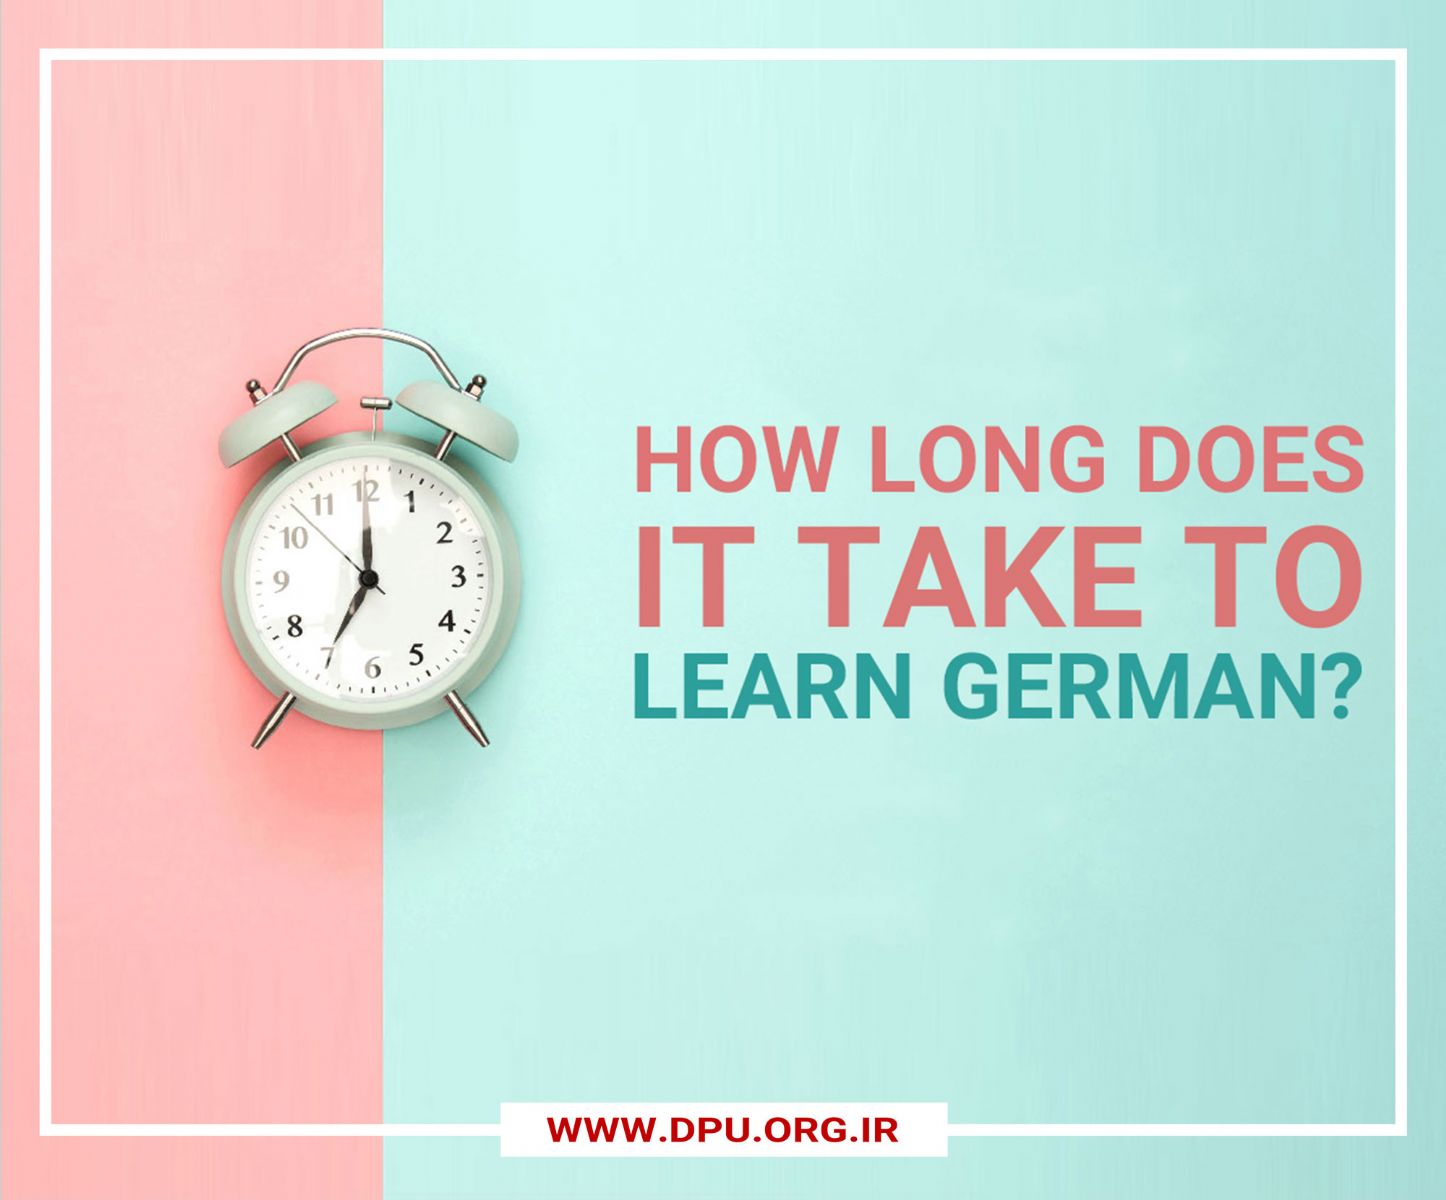 ساعت و زنوشته ای که مدت زمان یادگیری زبان آلمانی را نشان می دهد